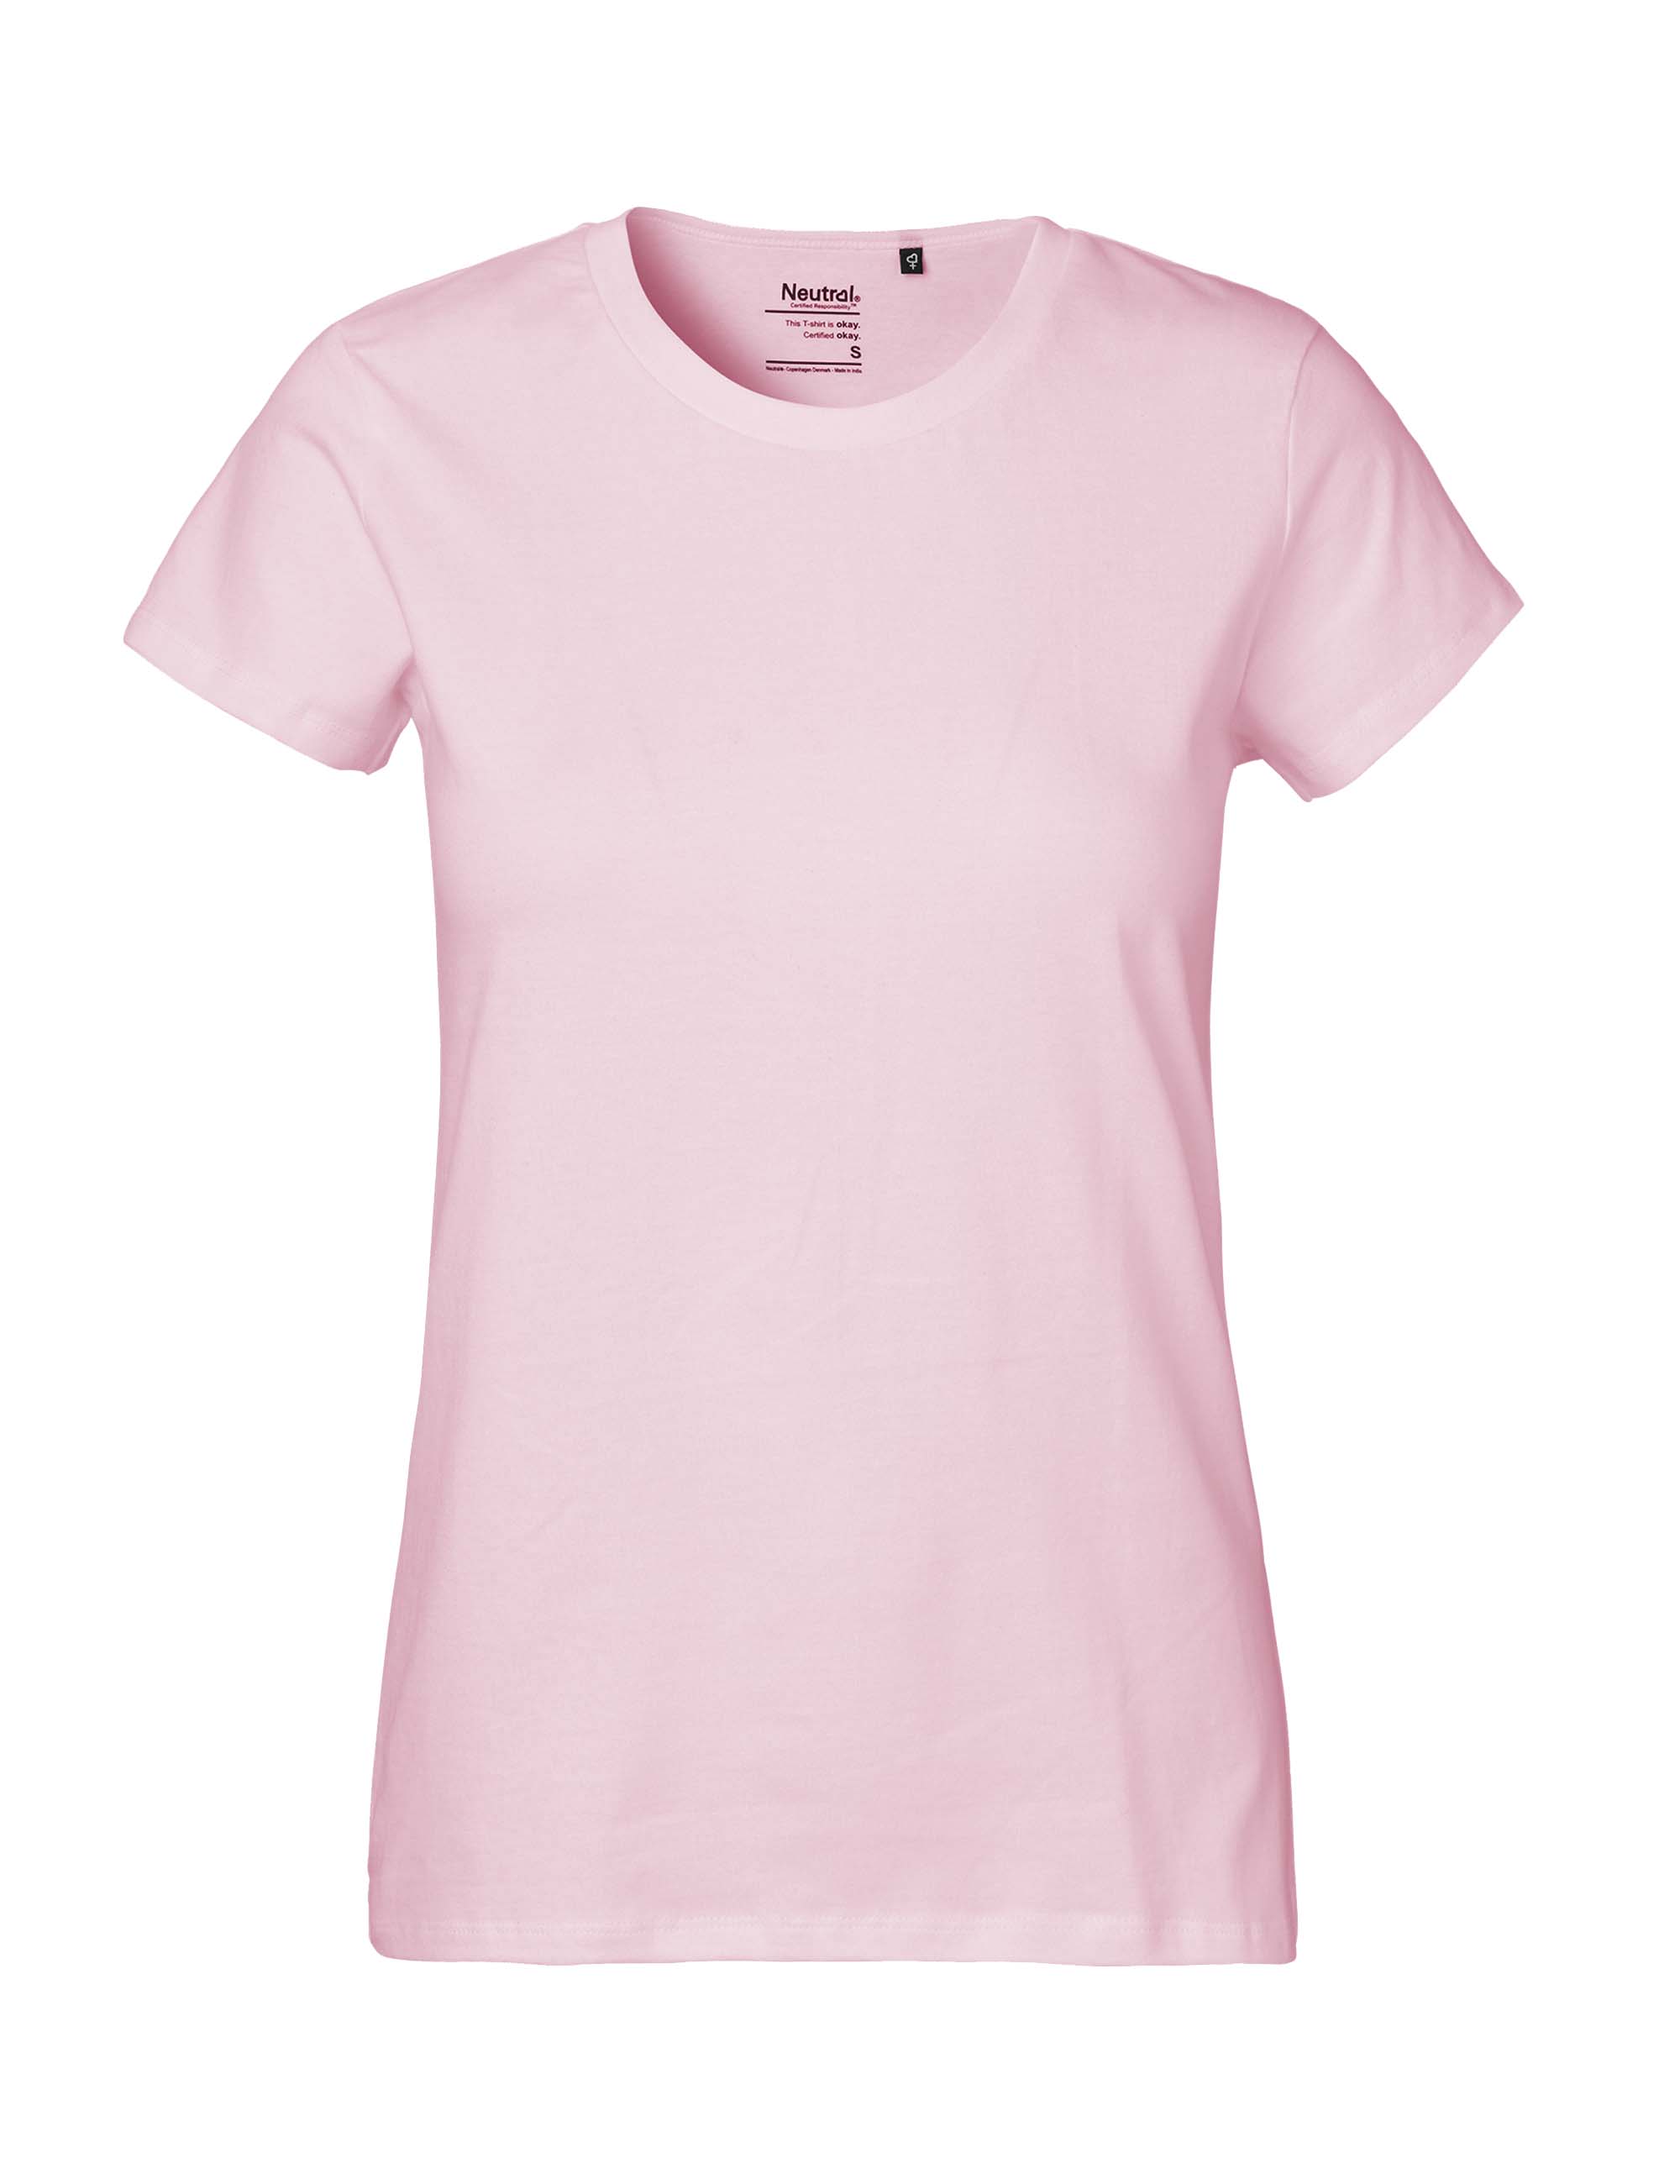 Fairtrade Organic Cotton Ladies T-Shirt 180 g/m² Neutral®